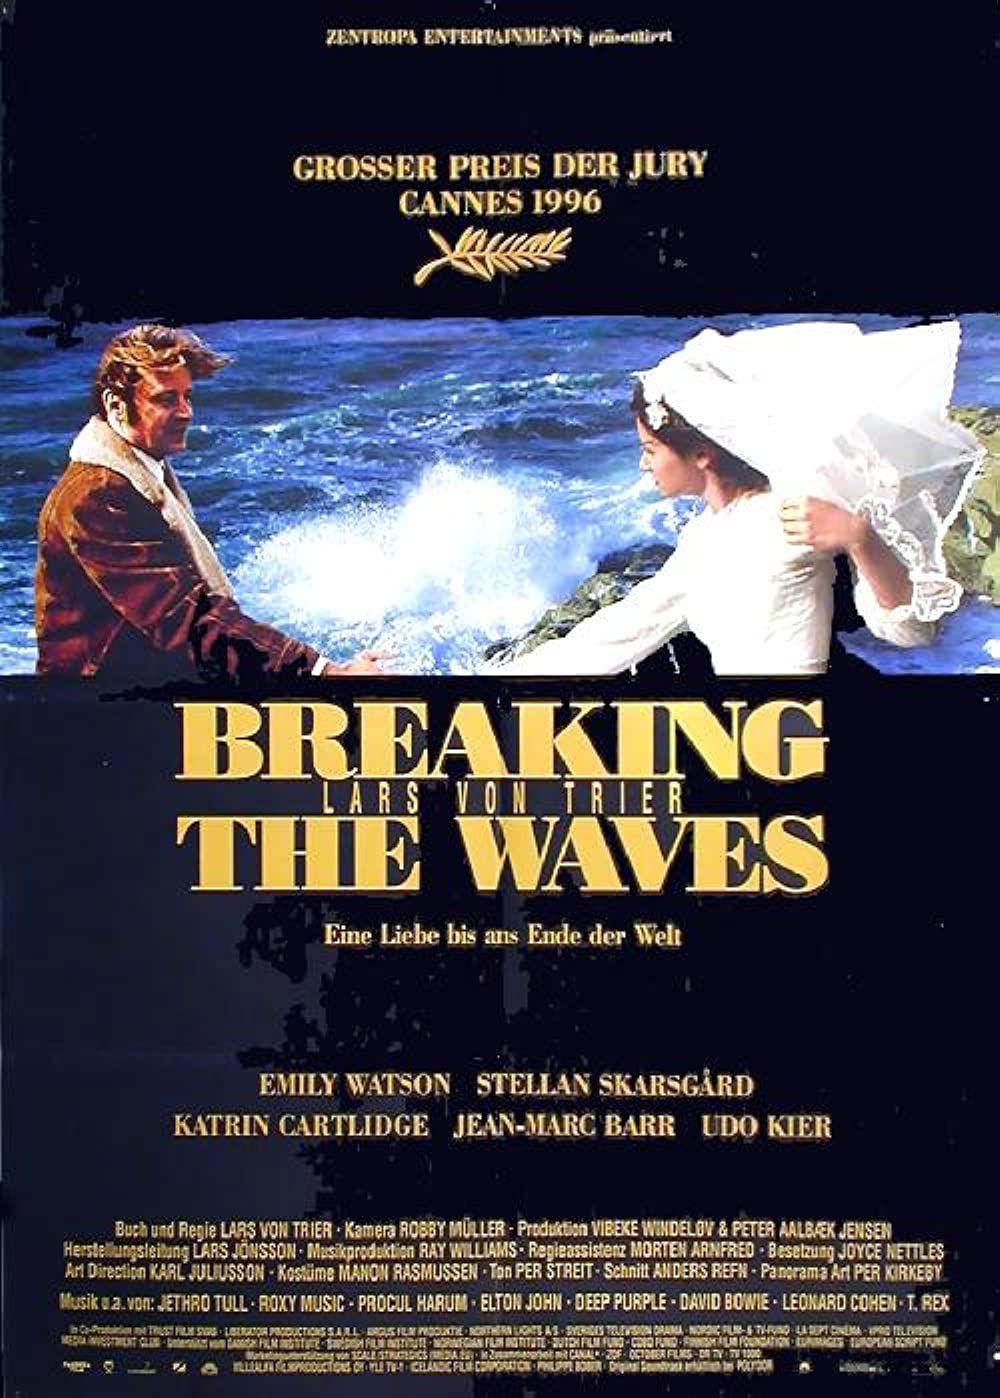 Filmbeschreibung zu Breaking the Waves